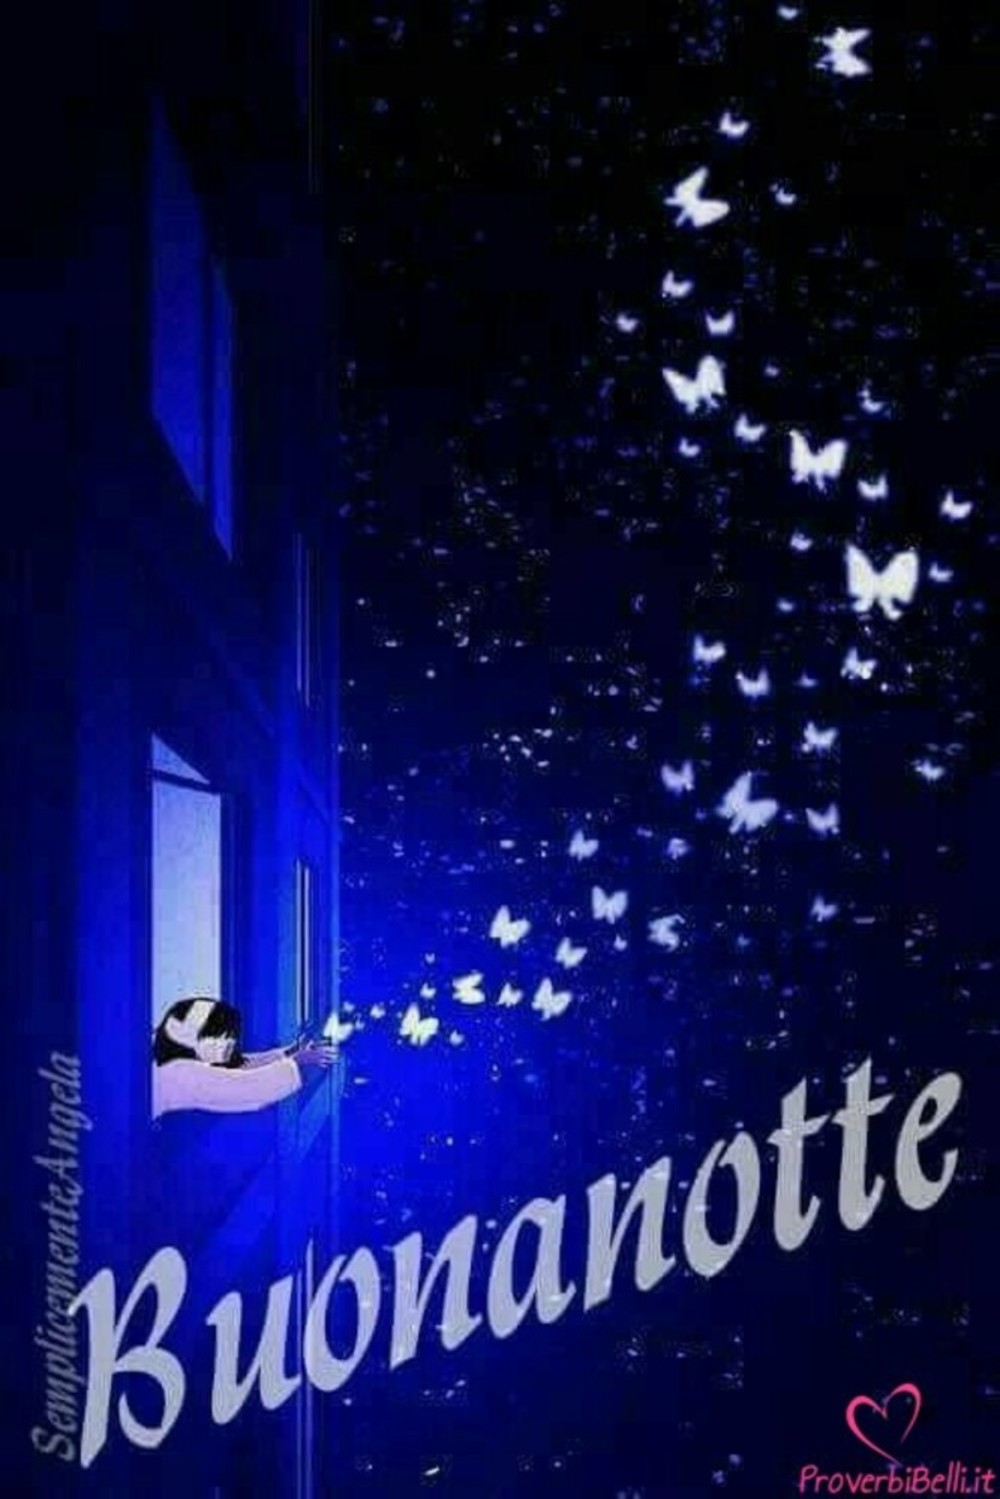 bacionotte-buonanotte-178